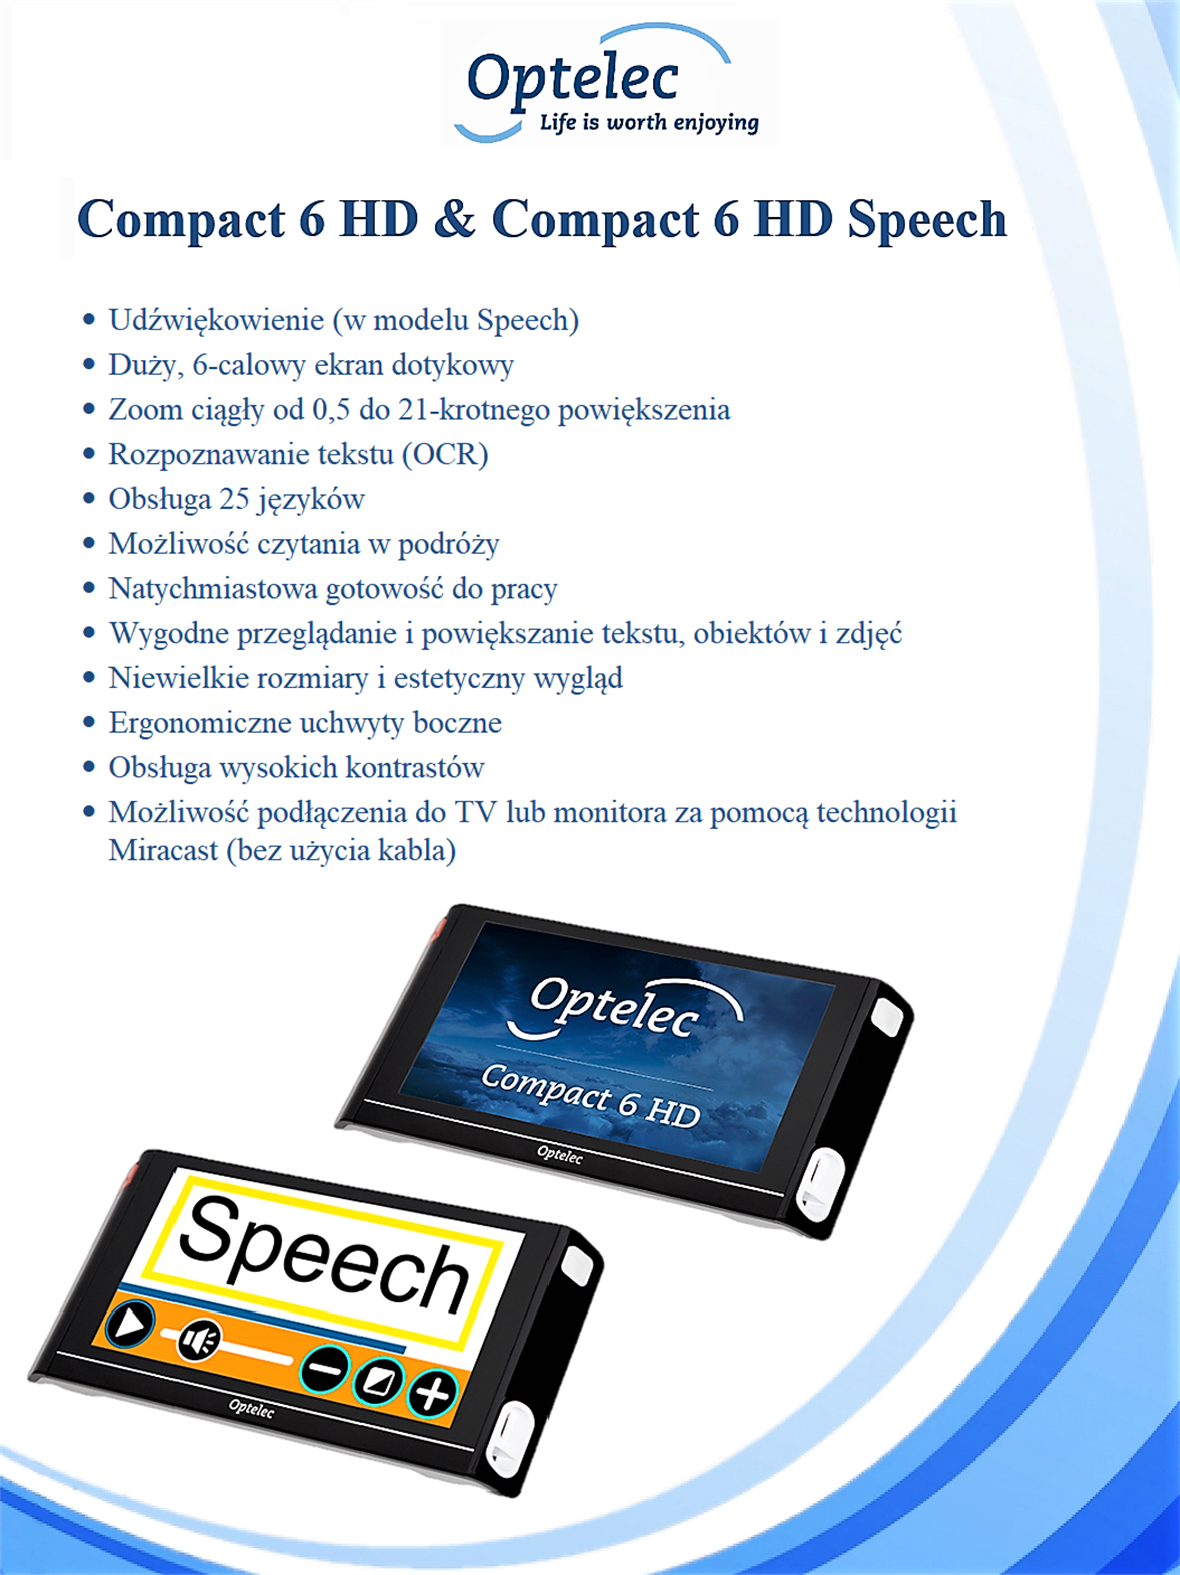 Compact 6 HD Speech & Without Speech (2)